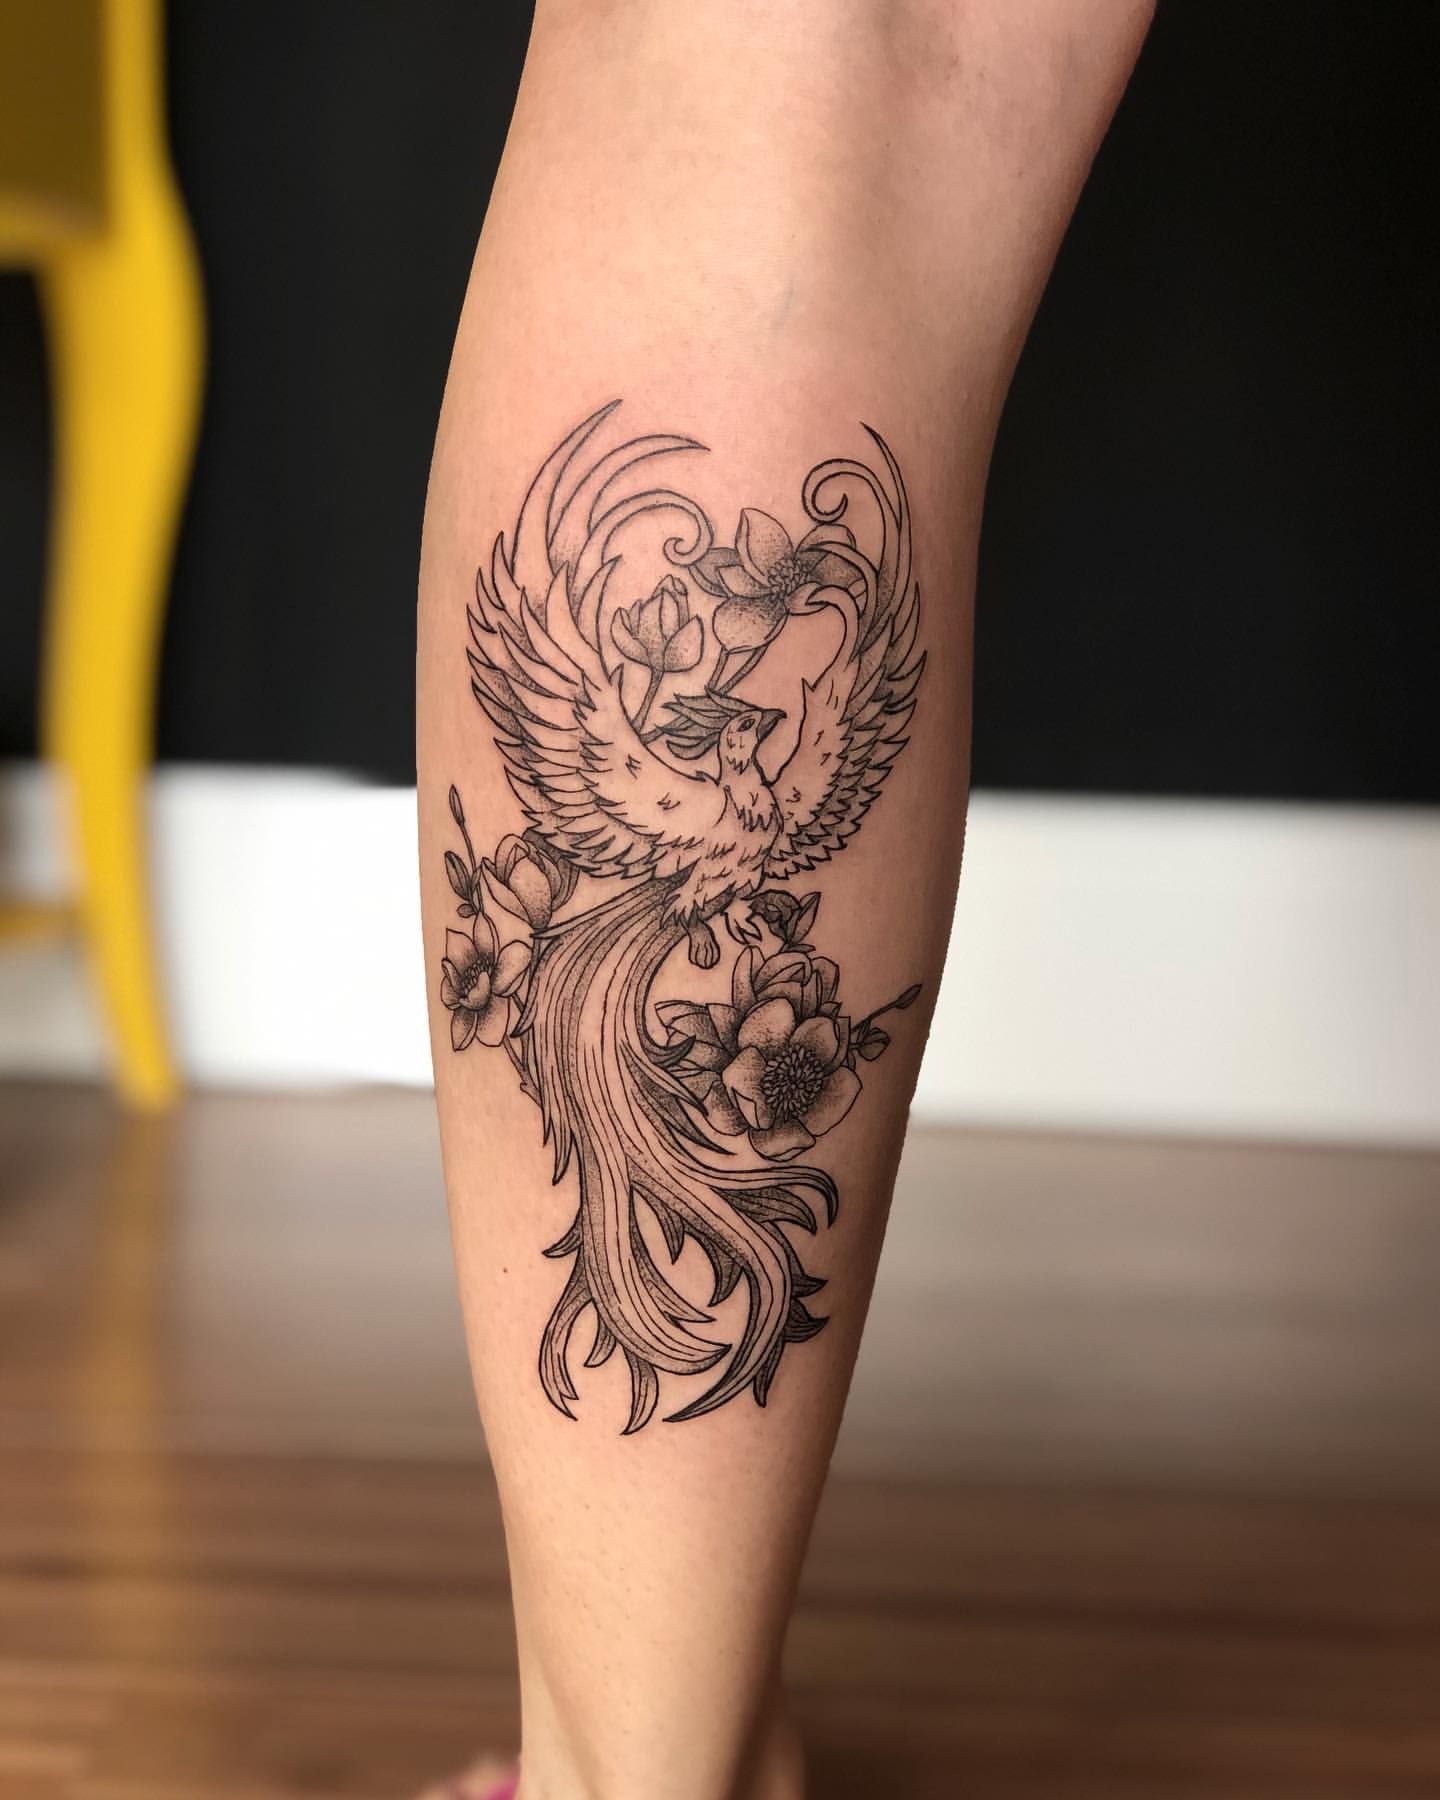 Phoenix calf tattoo Freshly done  Tattoos by Fletch  Facebook